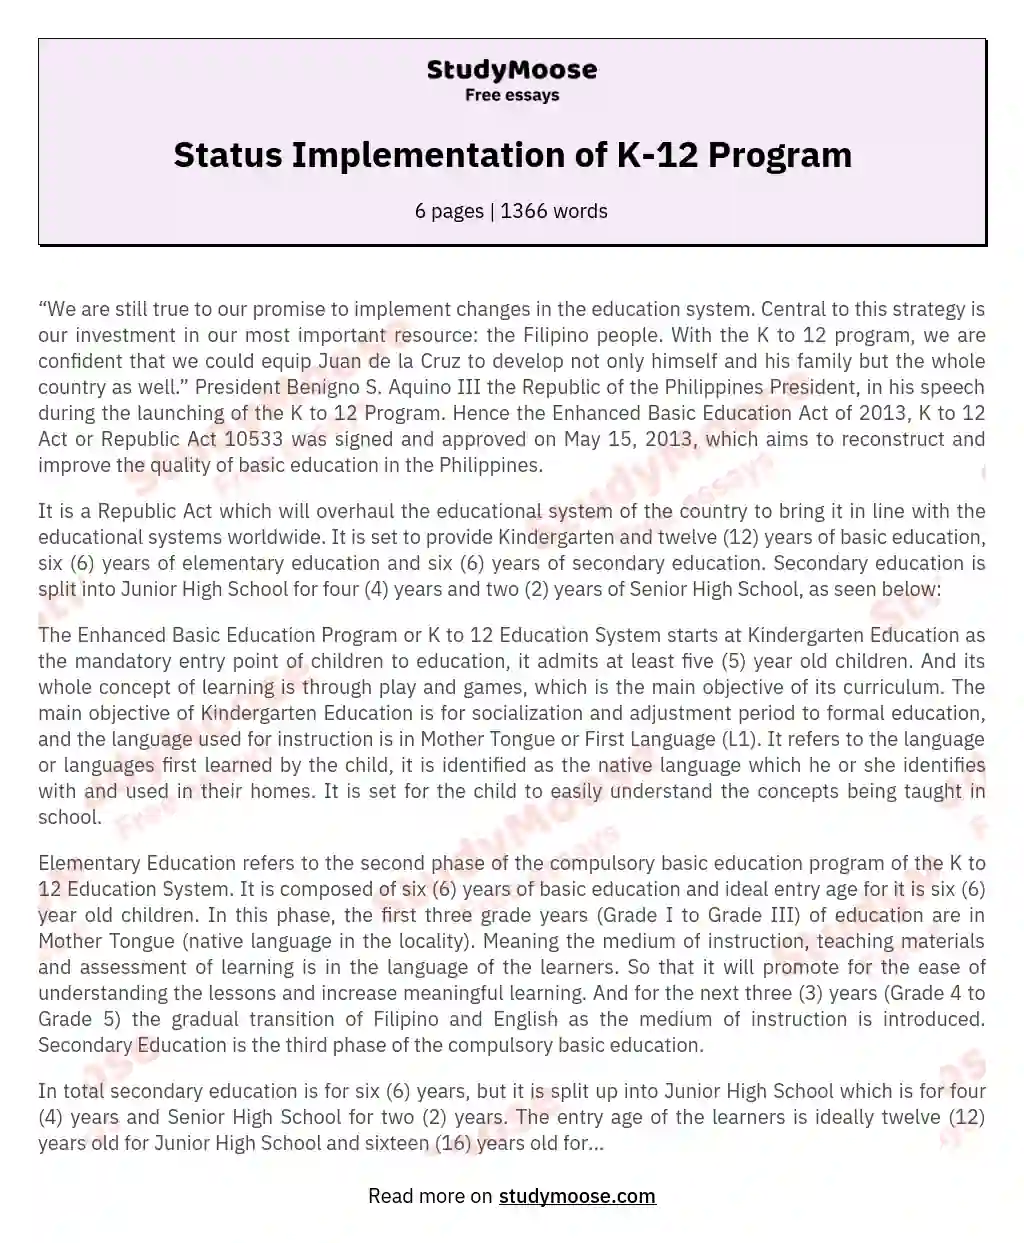 Status Implementation of K-12 Program